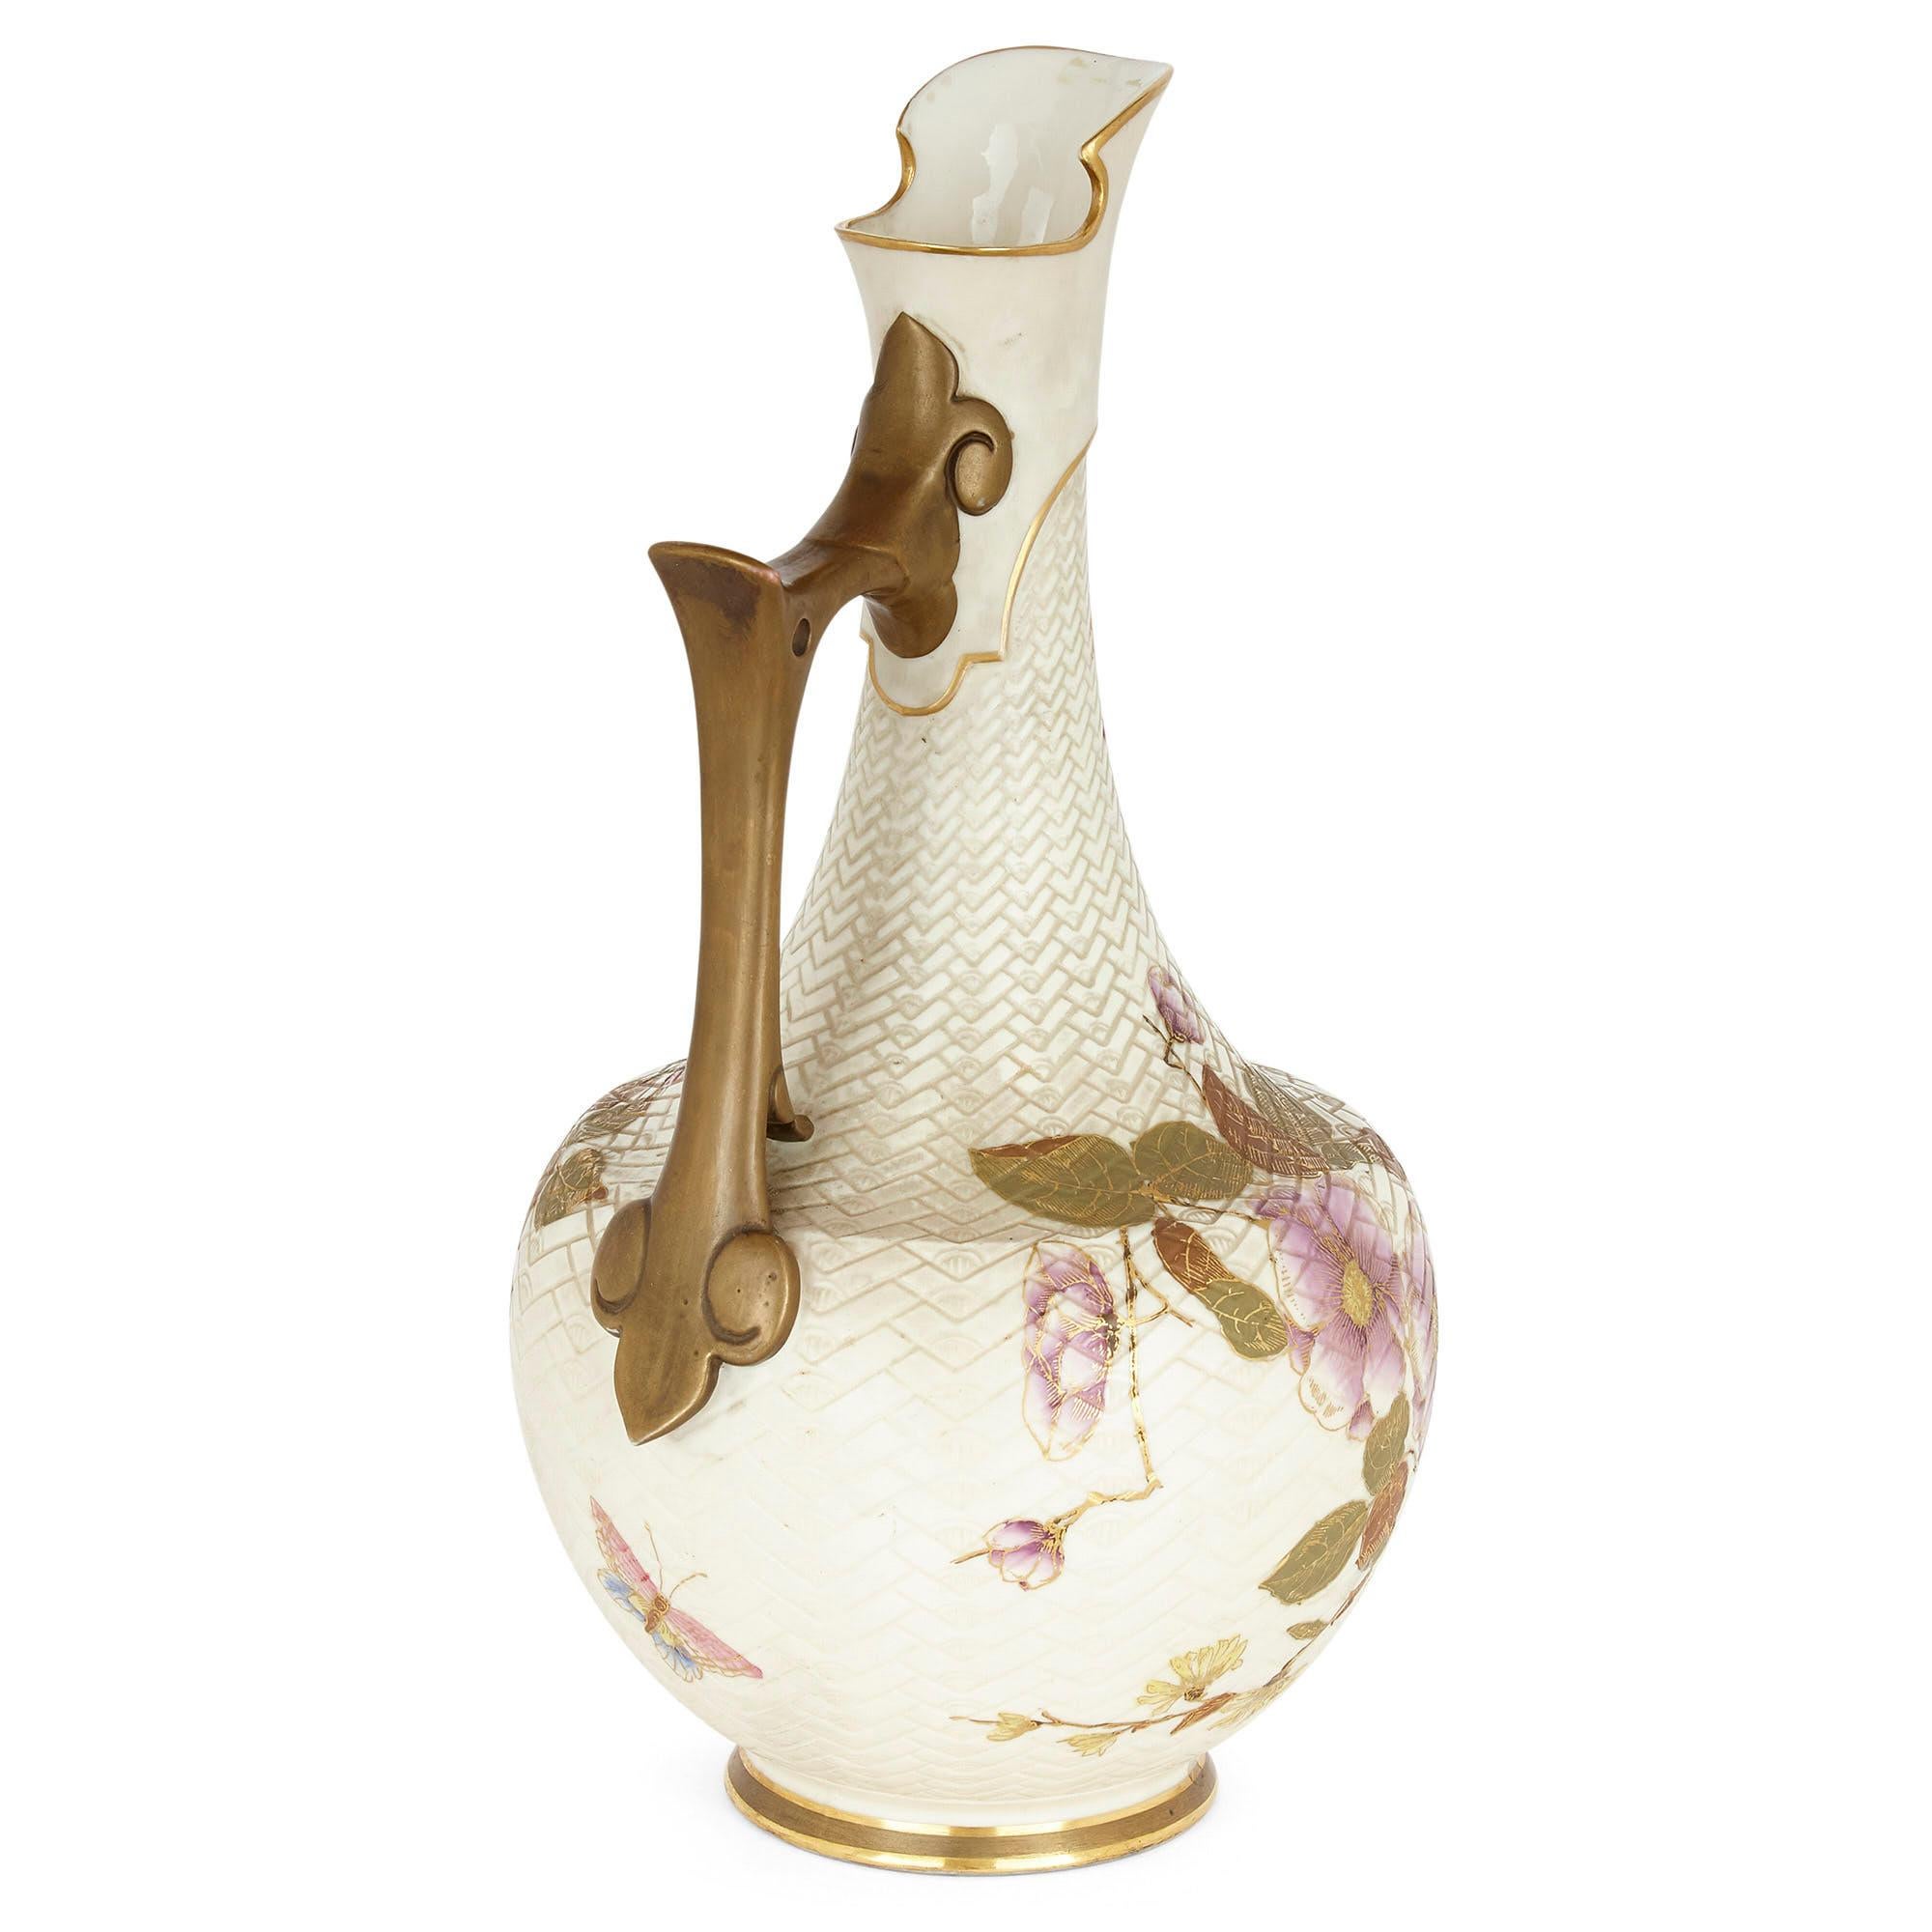 Aiguière en porcelaine anglaise de style japonais par Royal Worcester
Angleterre, vers 1880
Mesures : Hauteur 31 cm, diamètre 17 cm

Cette magnifique aiguière est fabriquée par le célèbre fabricant de porcelaine anglais Royal Worcester.